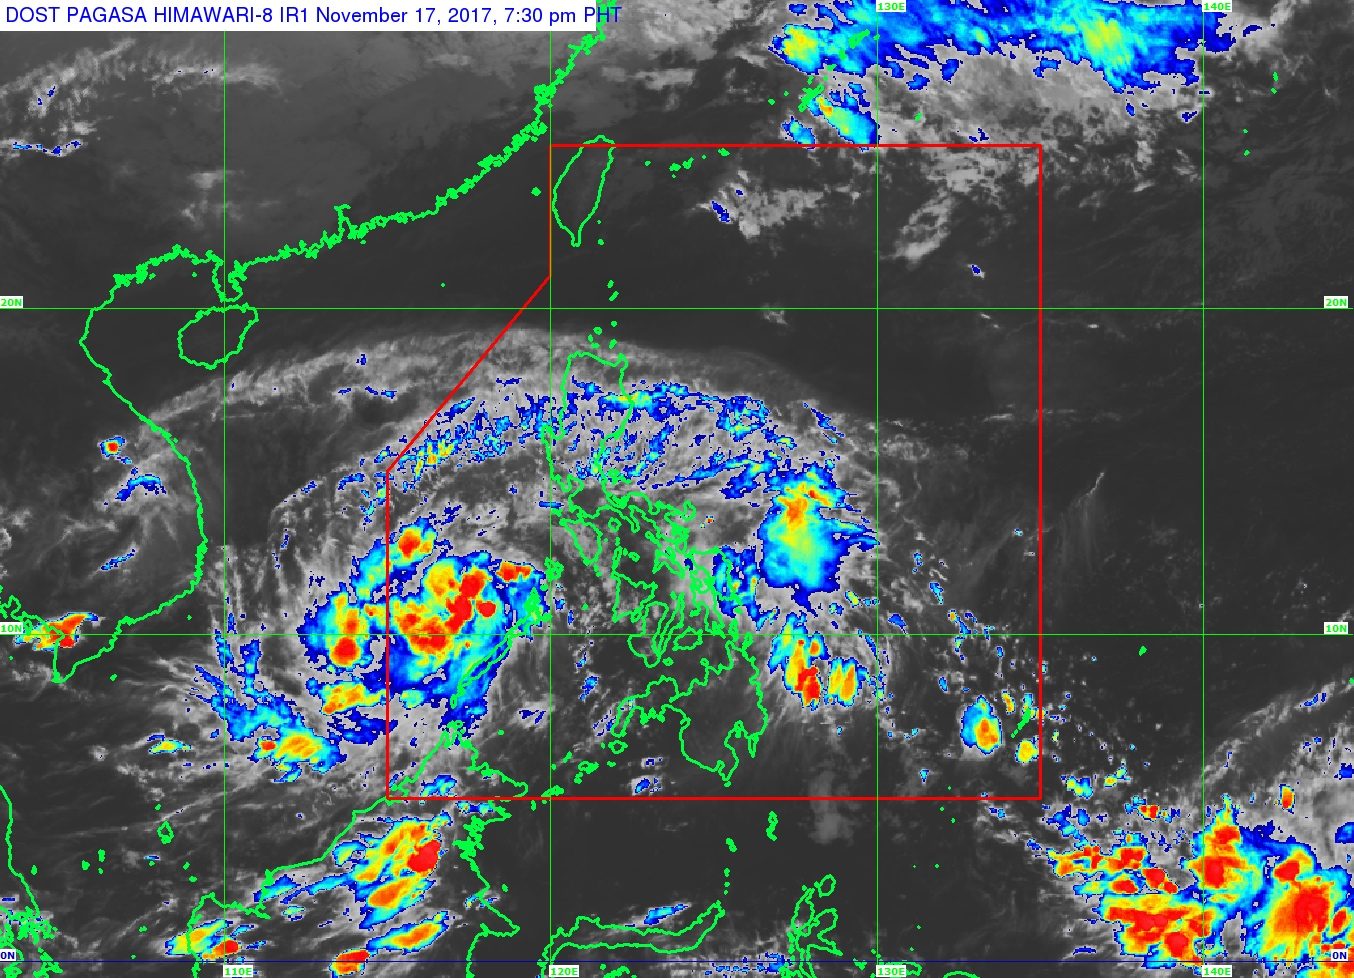 Tropical Depression Tino makes landfall in Palawan